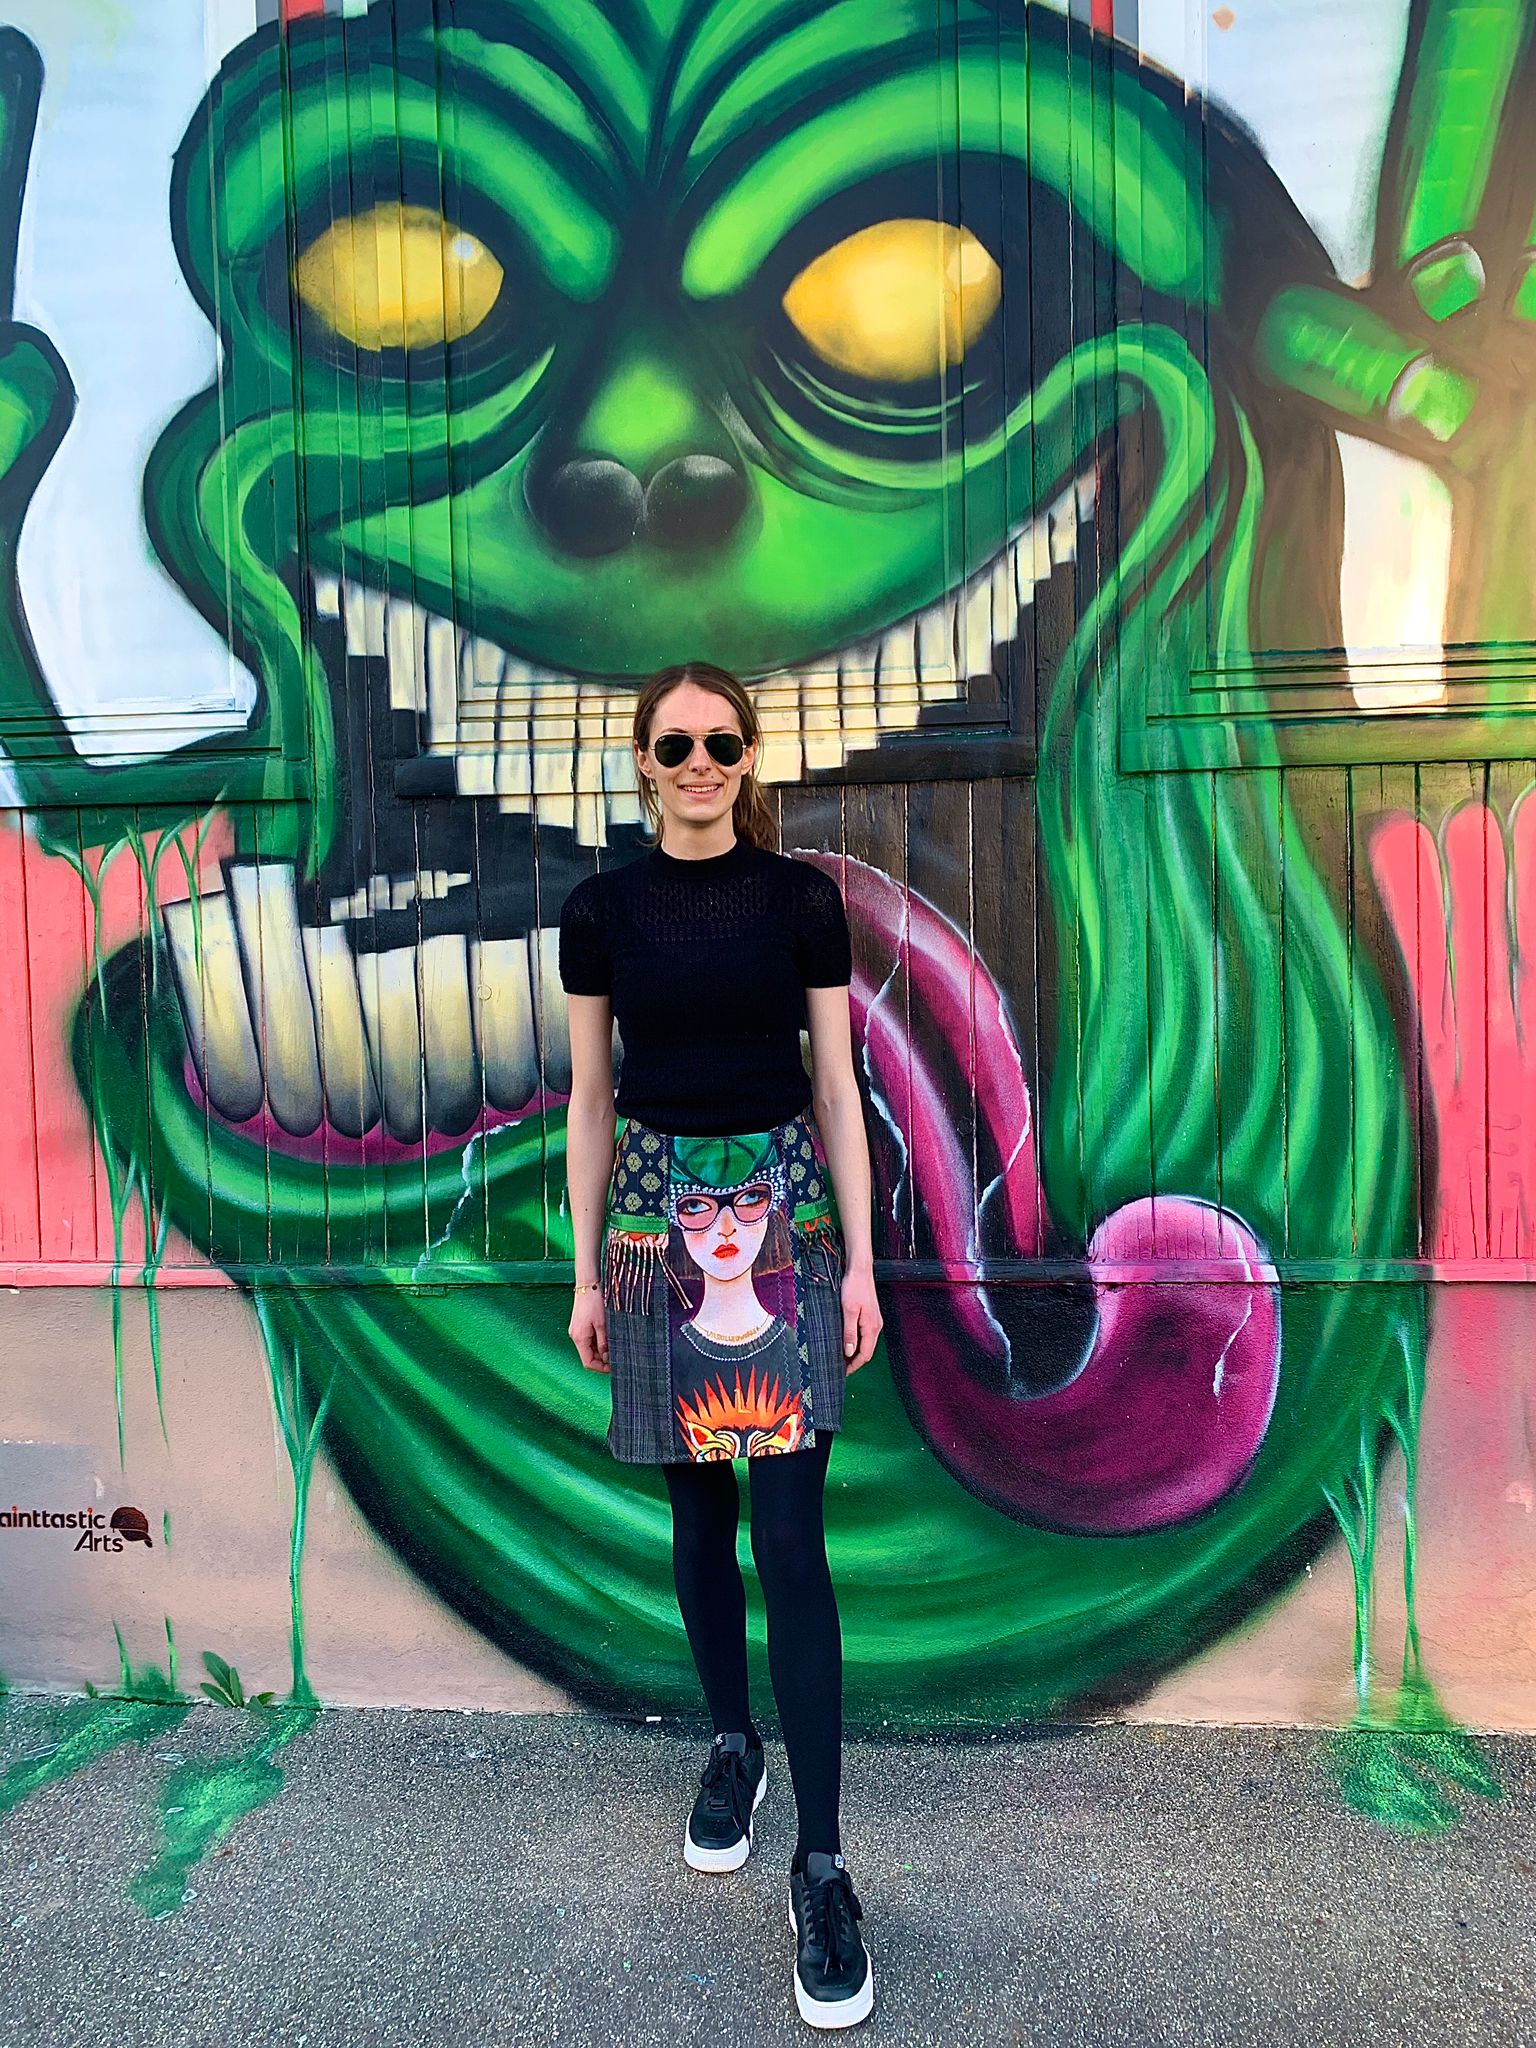 Frau mit Designerrock vor einer Grafitiwand